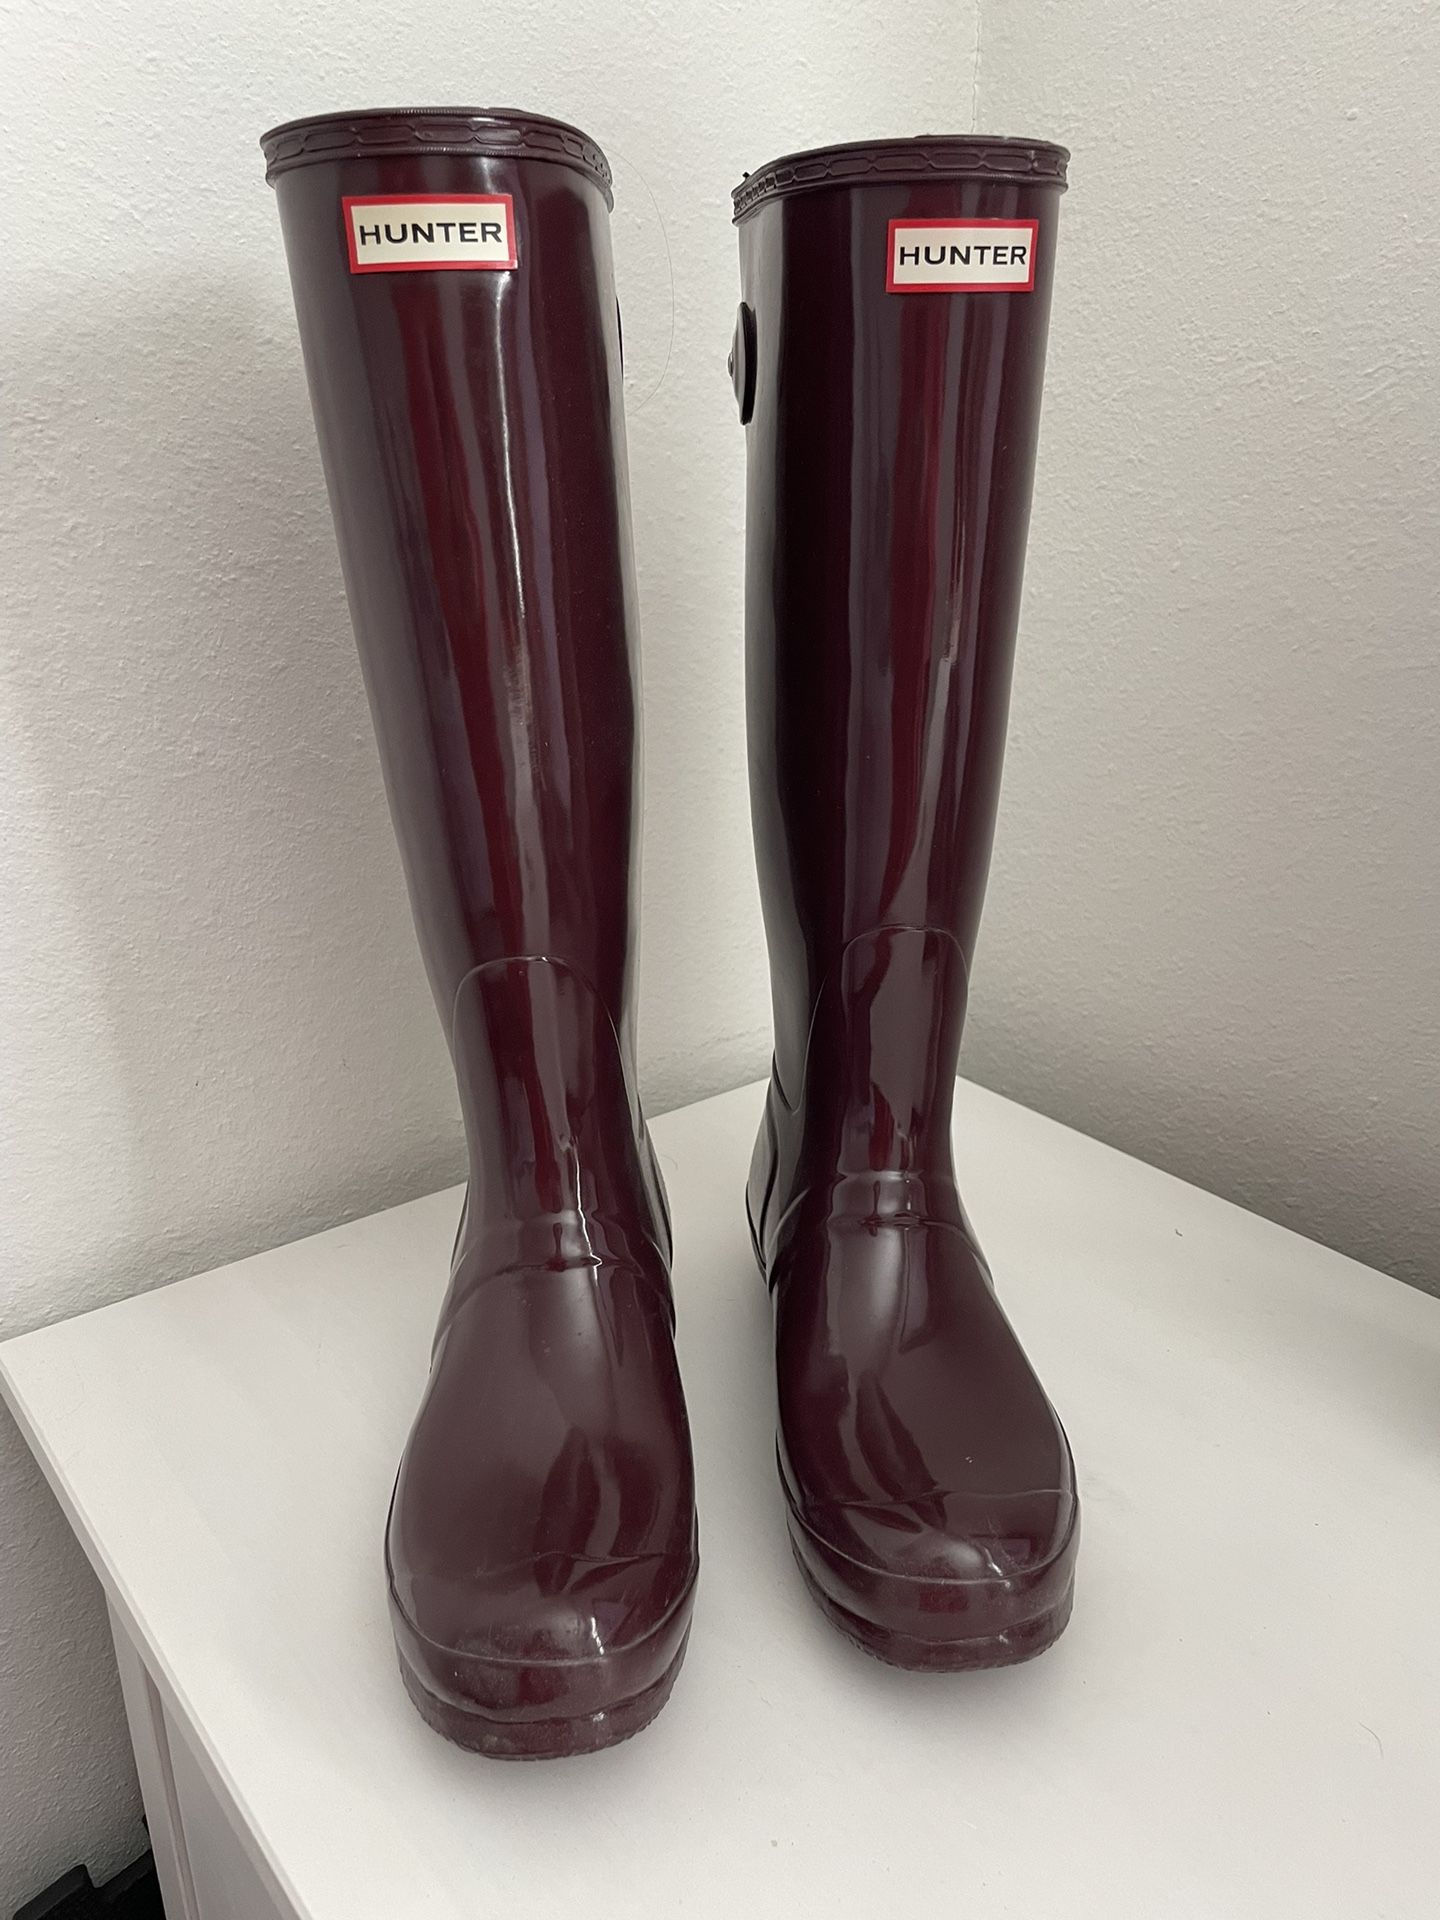 Hunter Rain boots - Size 9